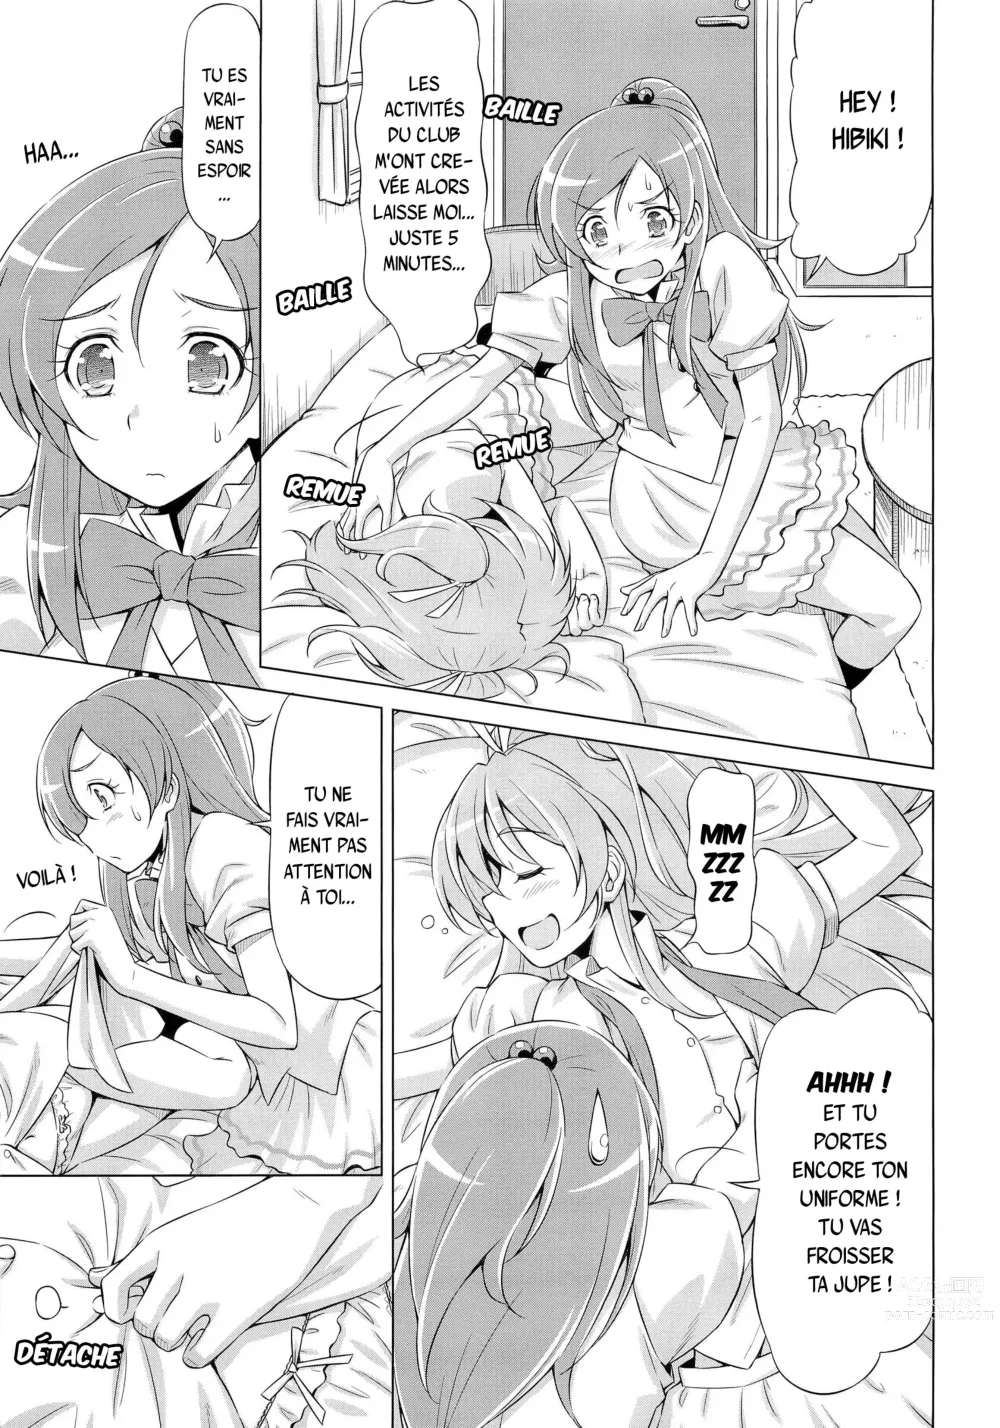 Page 6 of doujinshi Datte Hibiki ga Suki nandamon